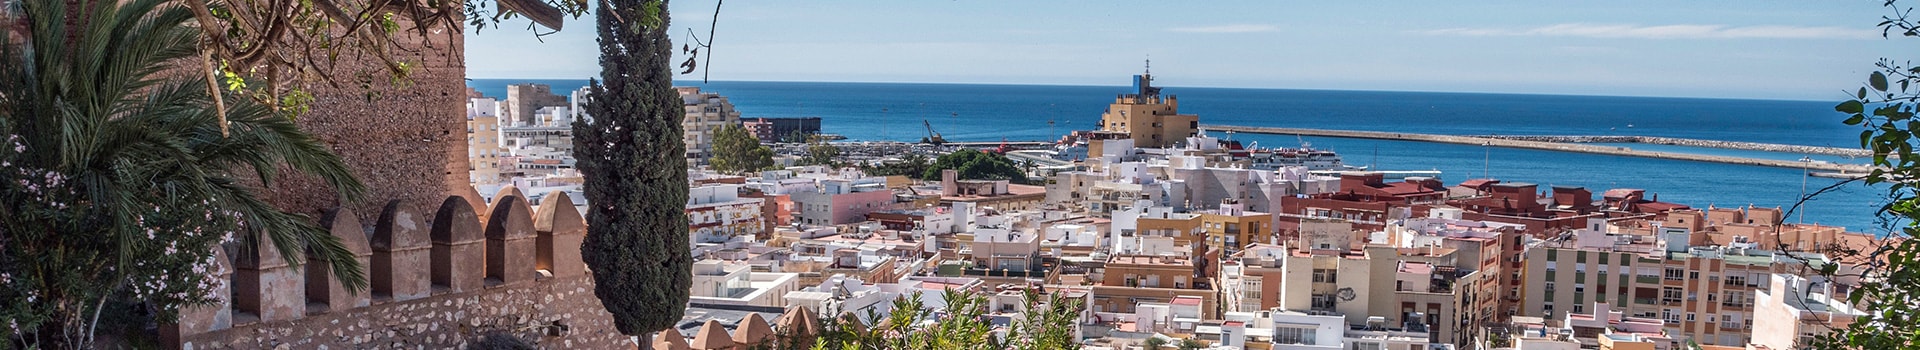 Maiorca - Almería